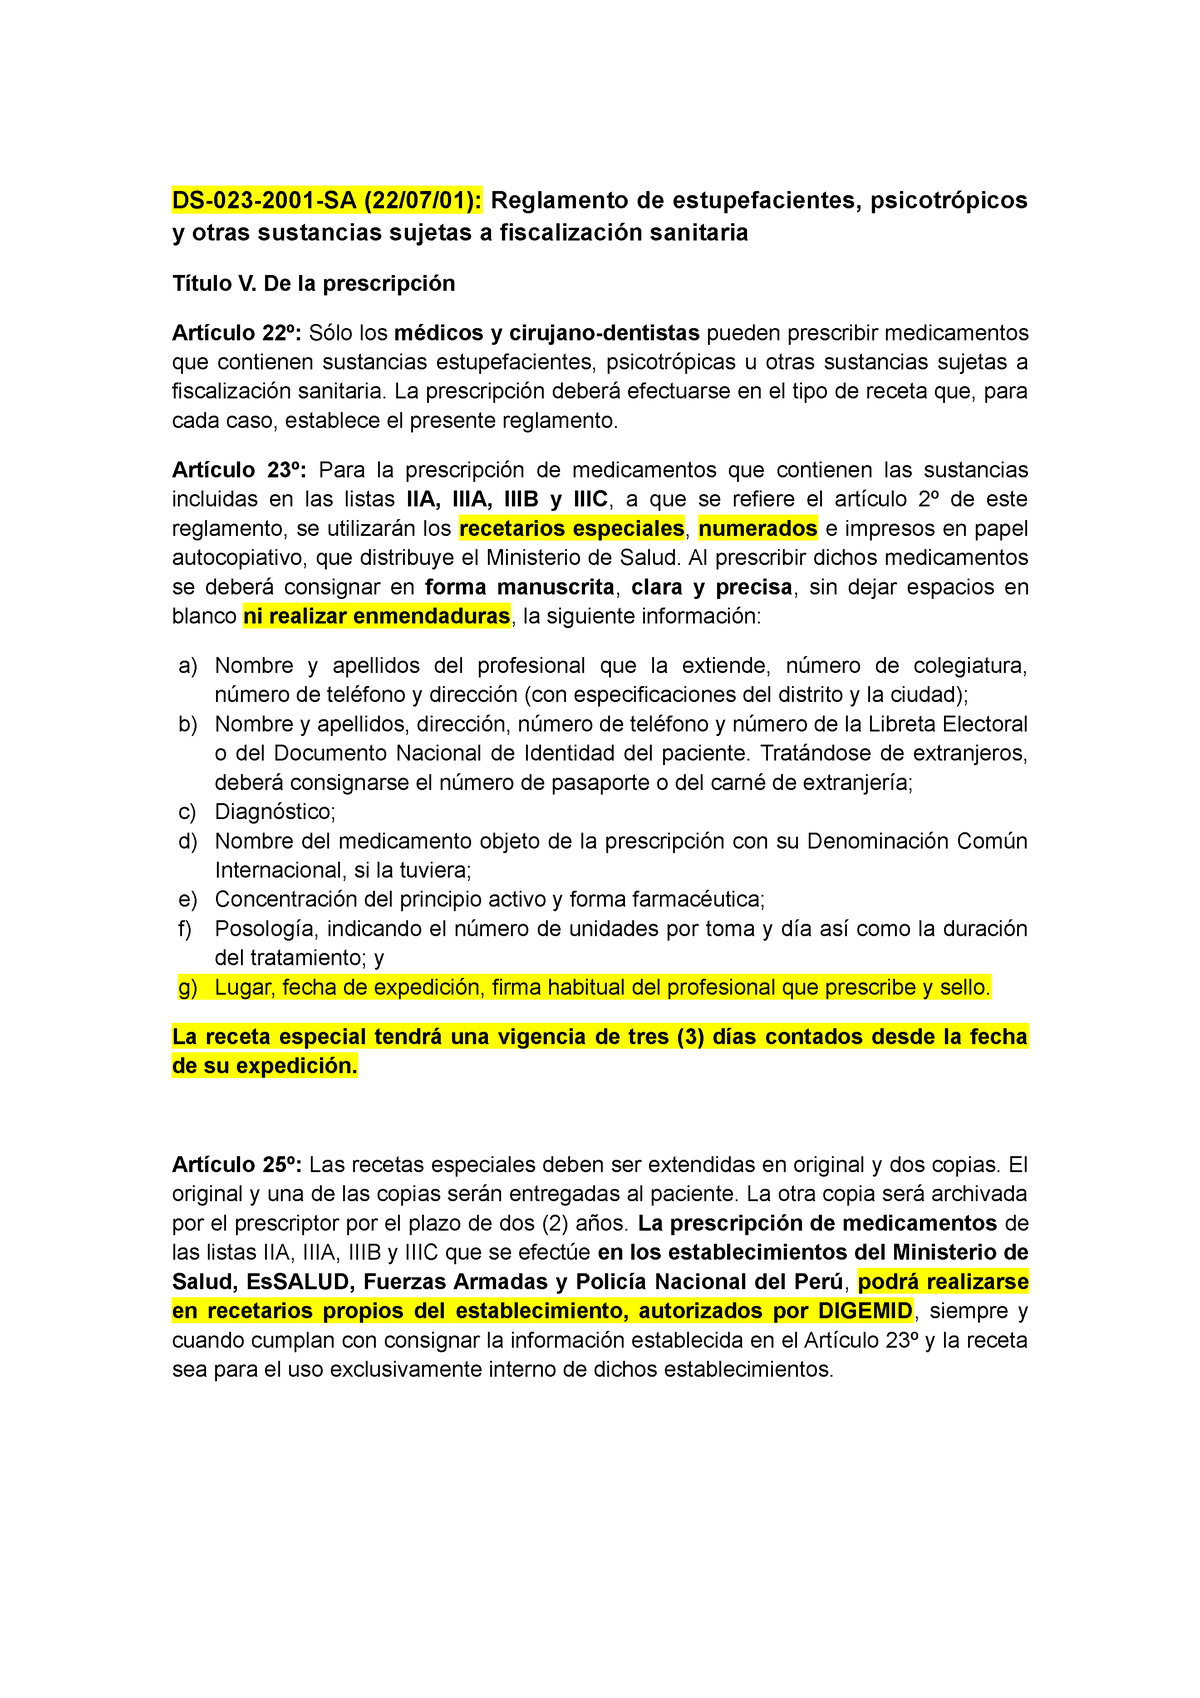 Receta especial - DS-023-2001-SA (22/07/01): Reglamento de estupefacientes,  psicotrópicos y otras - Studocu